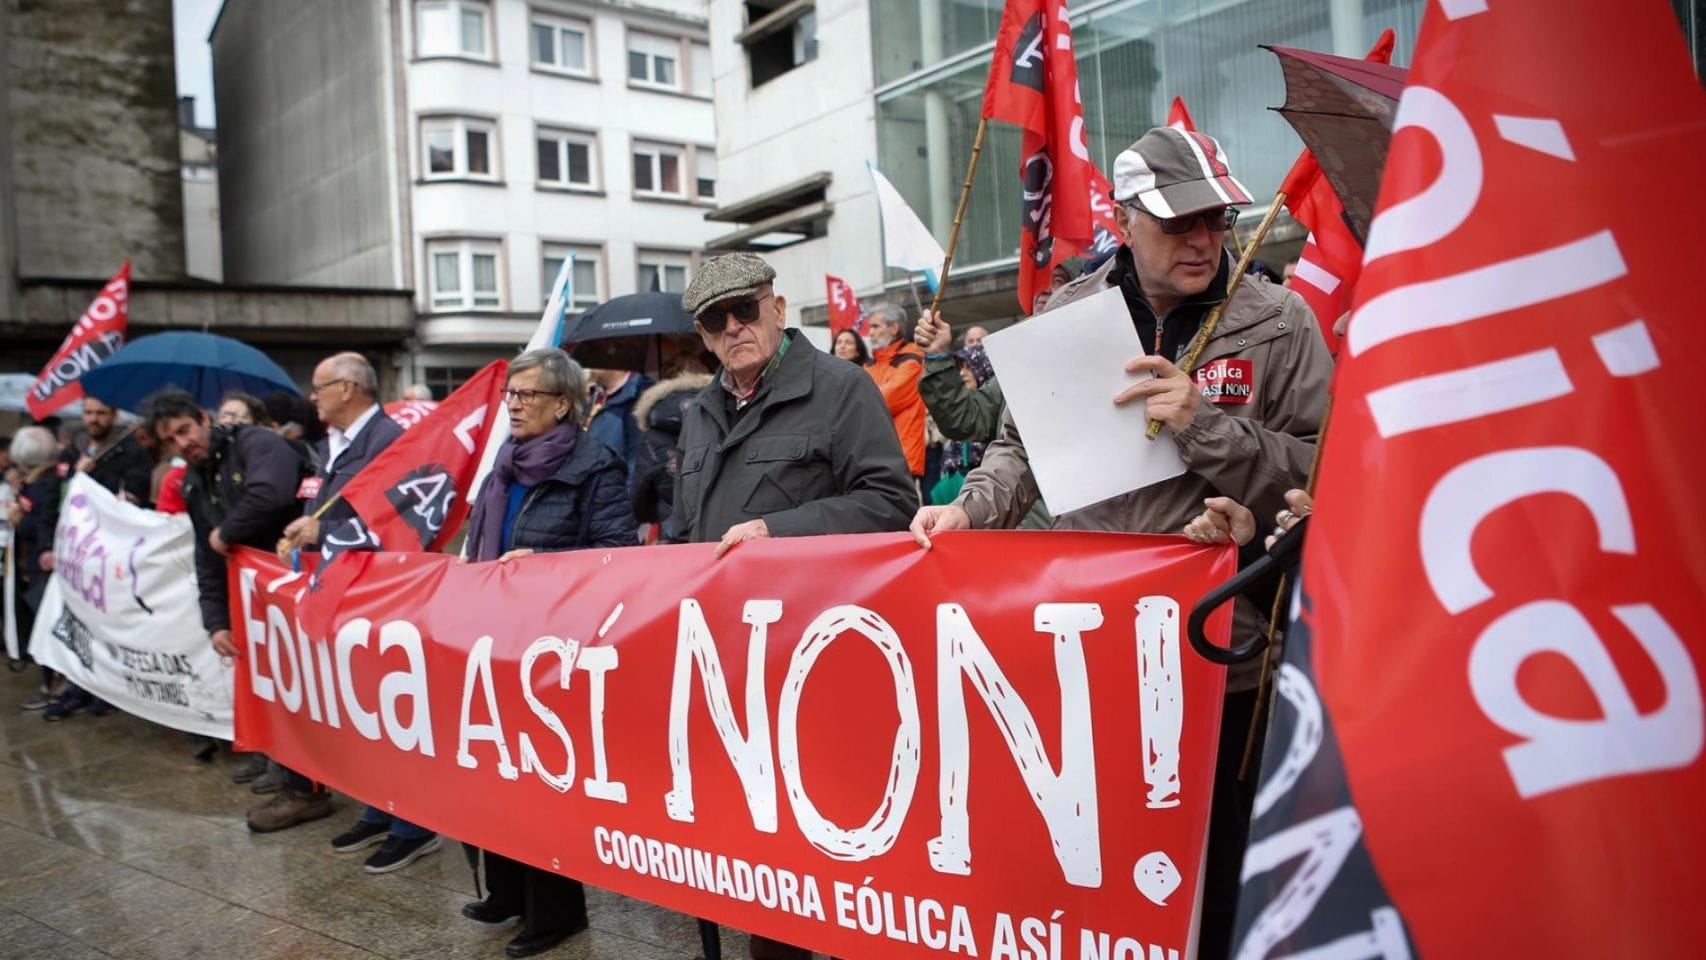 Protesta de 'Eólica así non' en Lugo.